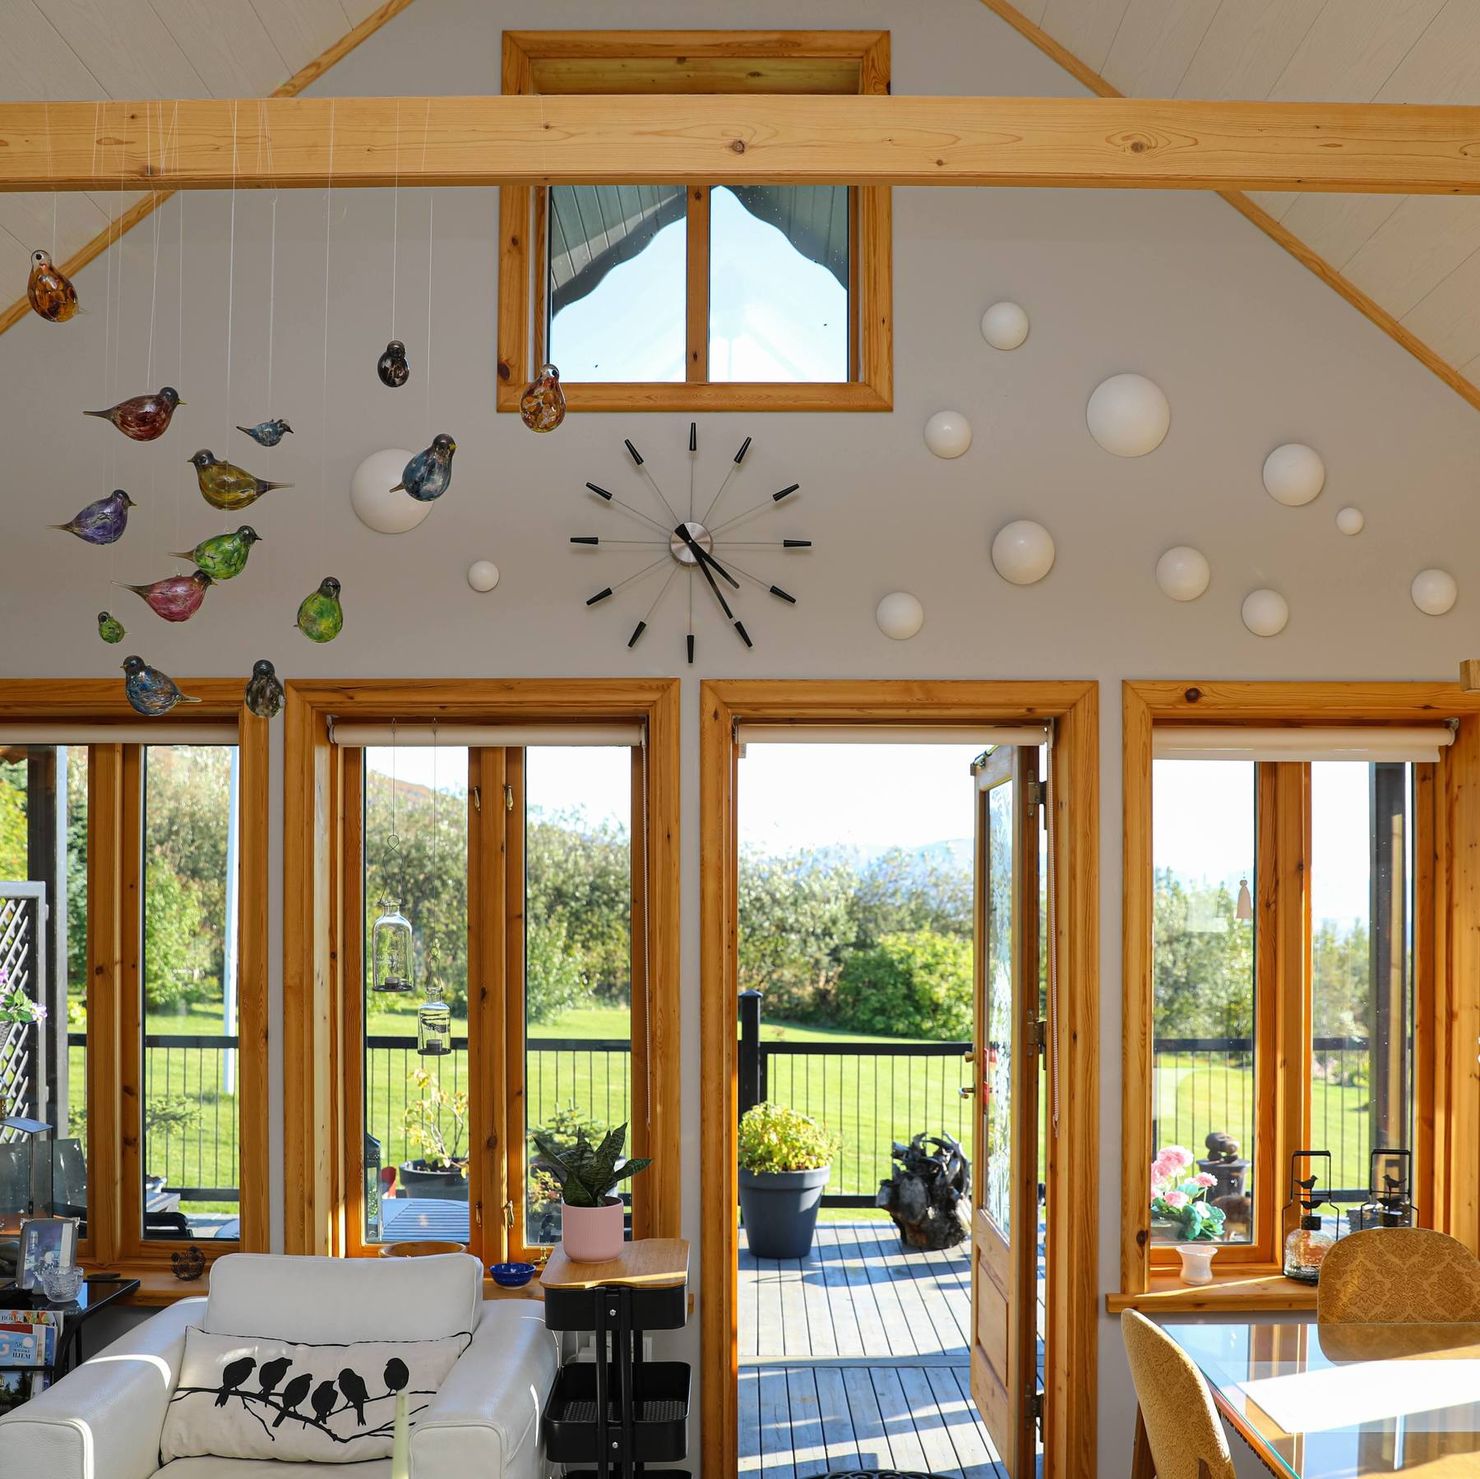 Panaoramfenster umgeben den gesamten Wohnbereich und sorgen für eine helle Atmosphäre im Ferienhaus